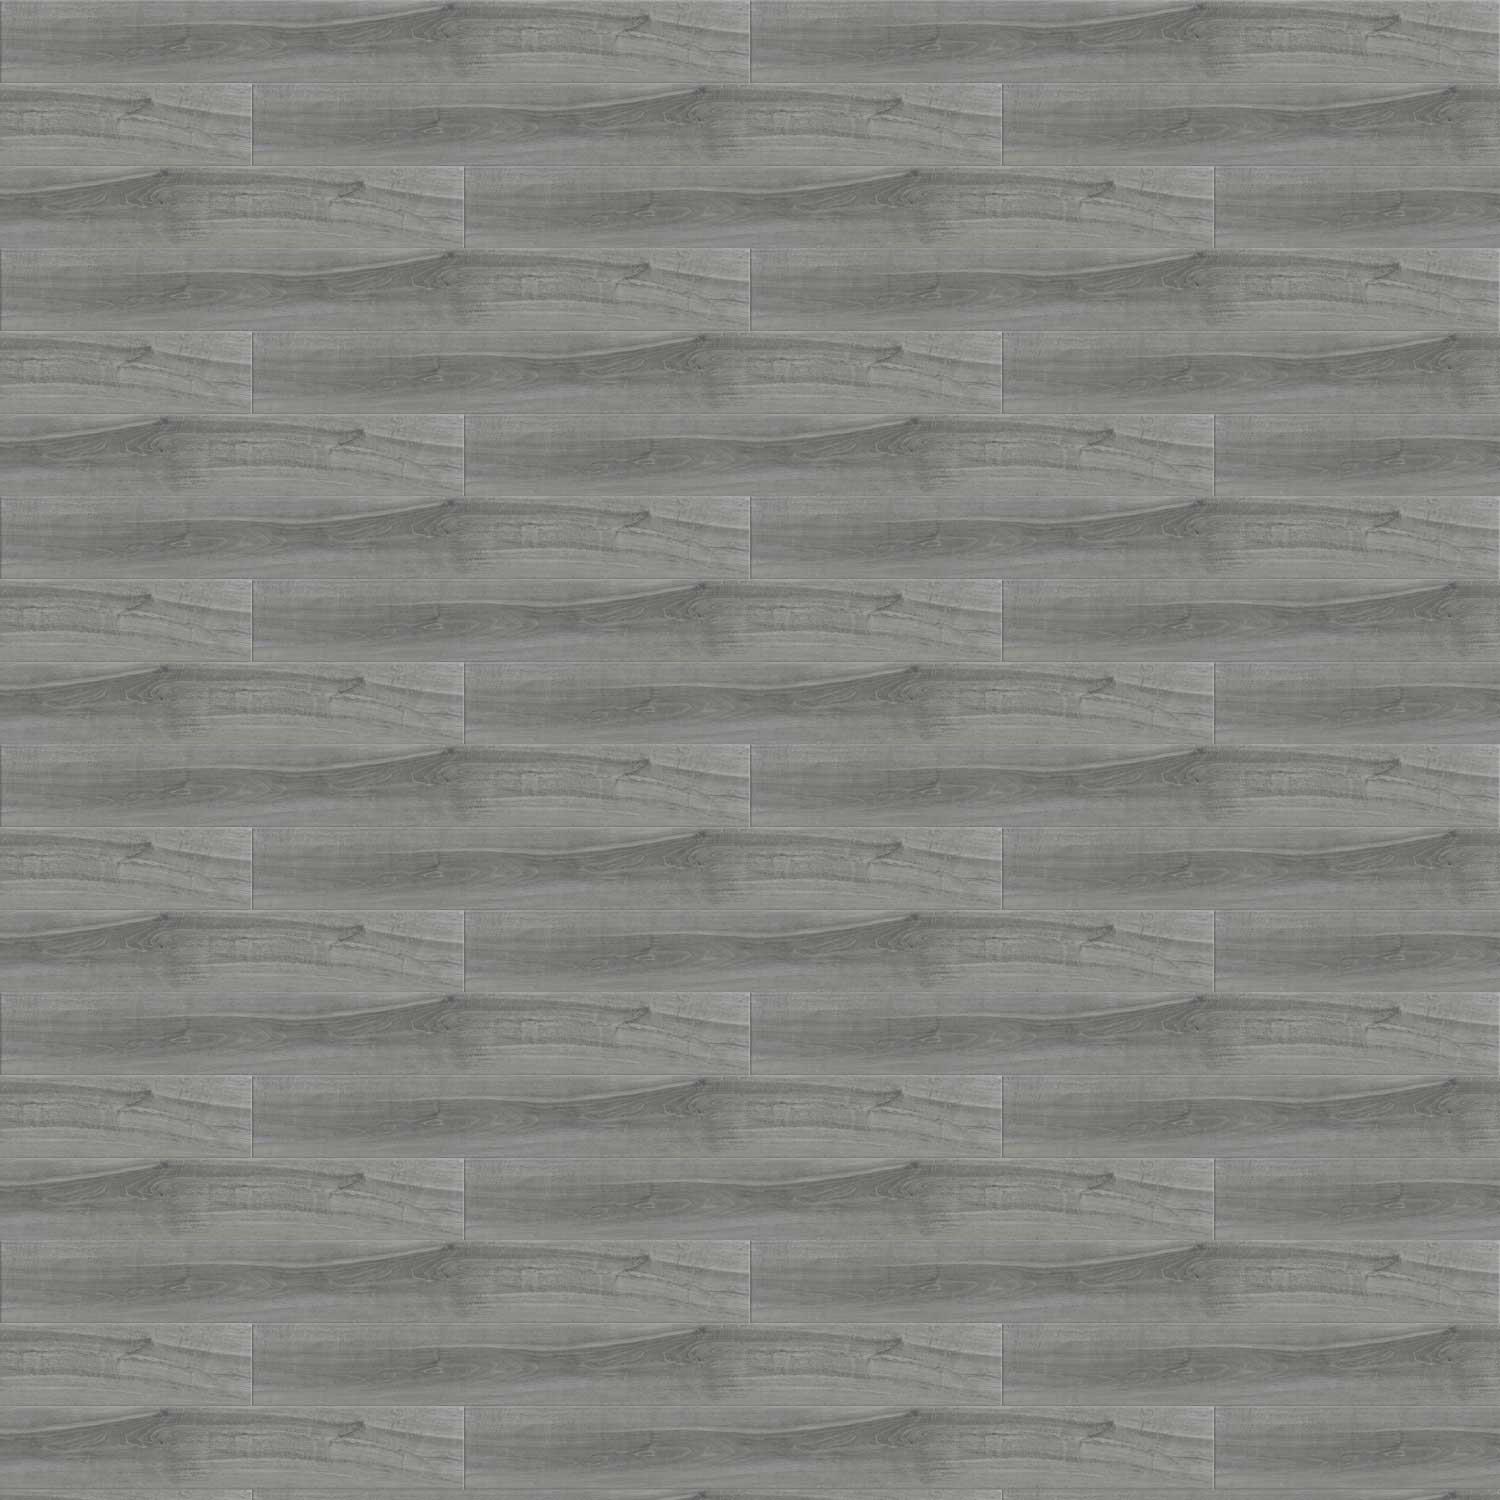 Timber Grey Porcelain Tile Wood Effect Walls Floor Large 200x1200mm